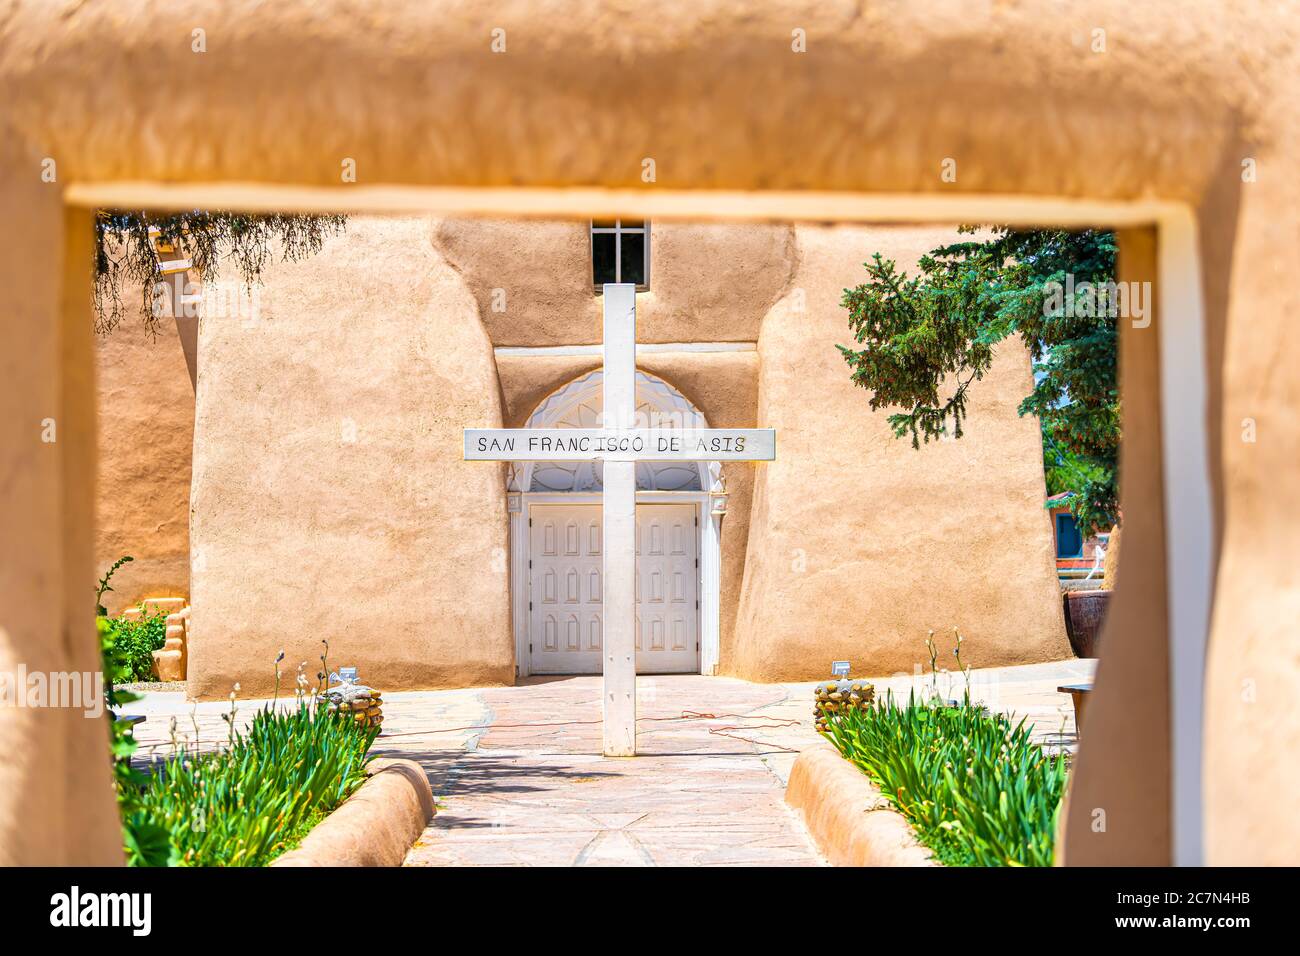 Ranchos de Taos St Francic Plaza e la chiesa di San Francisco de Aseis con ingresso a croce e cancello nel giorno di sole nel New Mexico Foto Stock